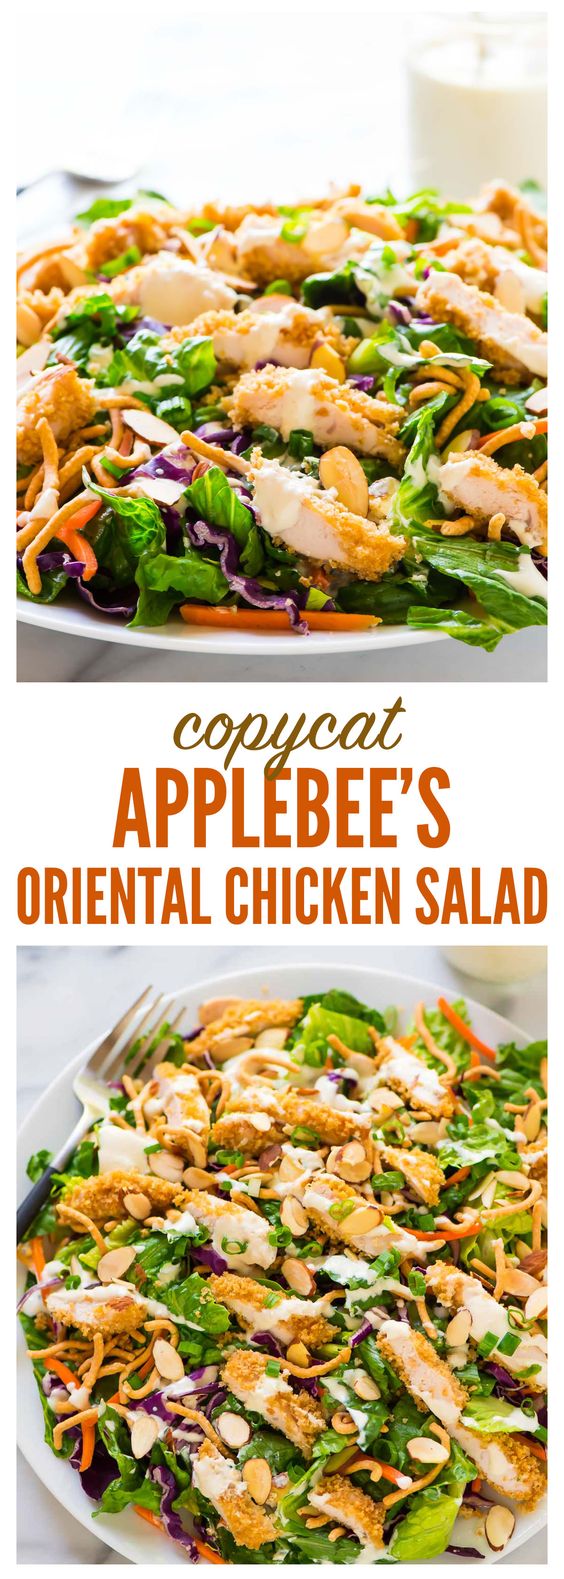 Applebee's Oriental Chicken Salad - mynewkitchen